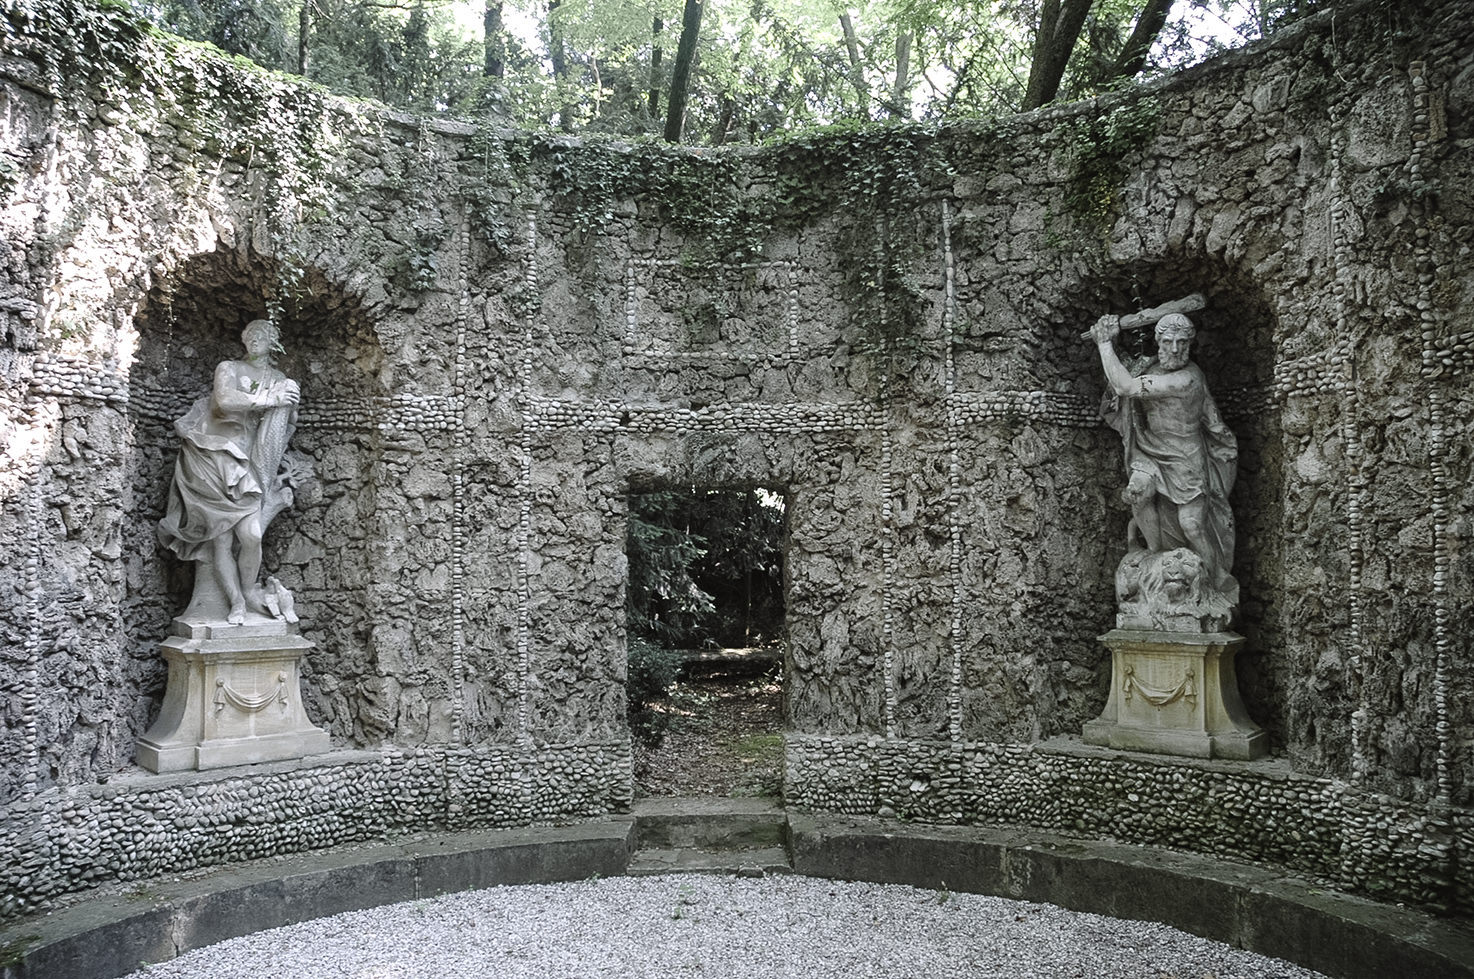 Temple in the gardens of Villa Rizzardi